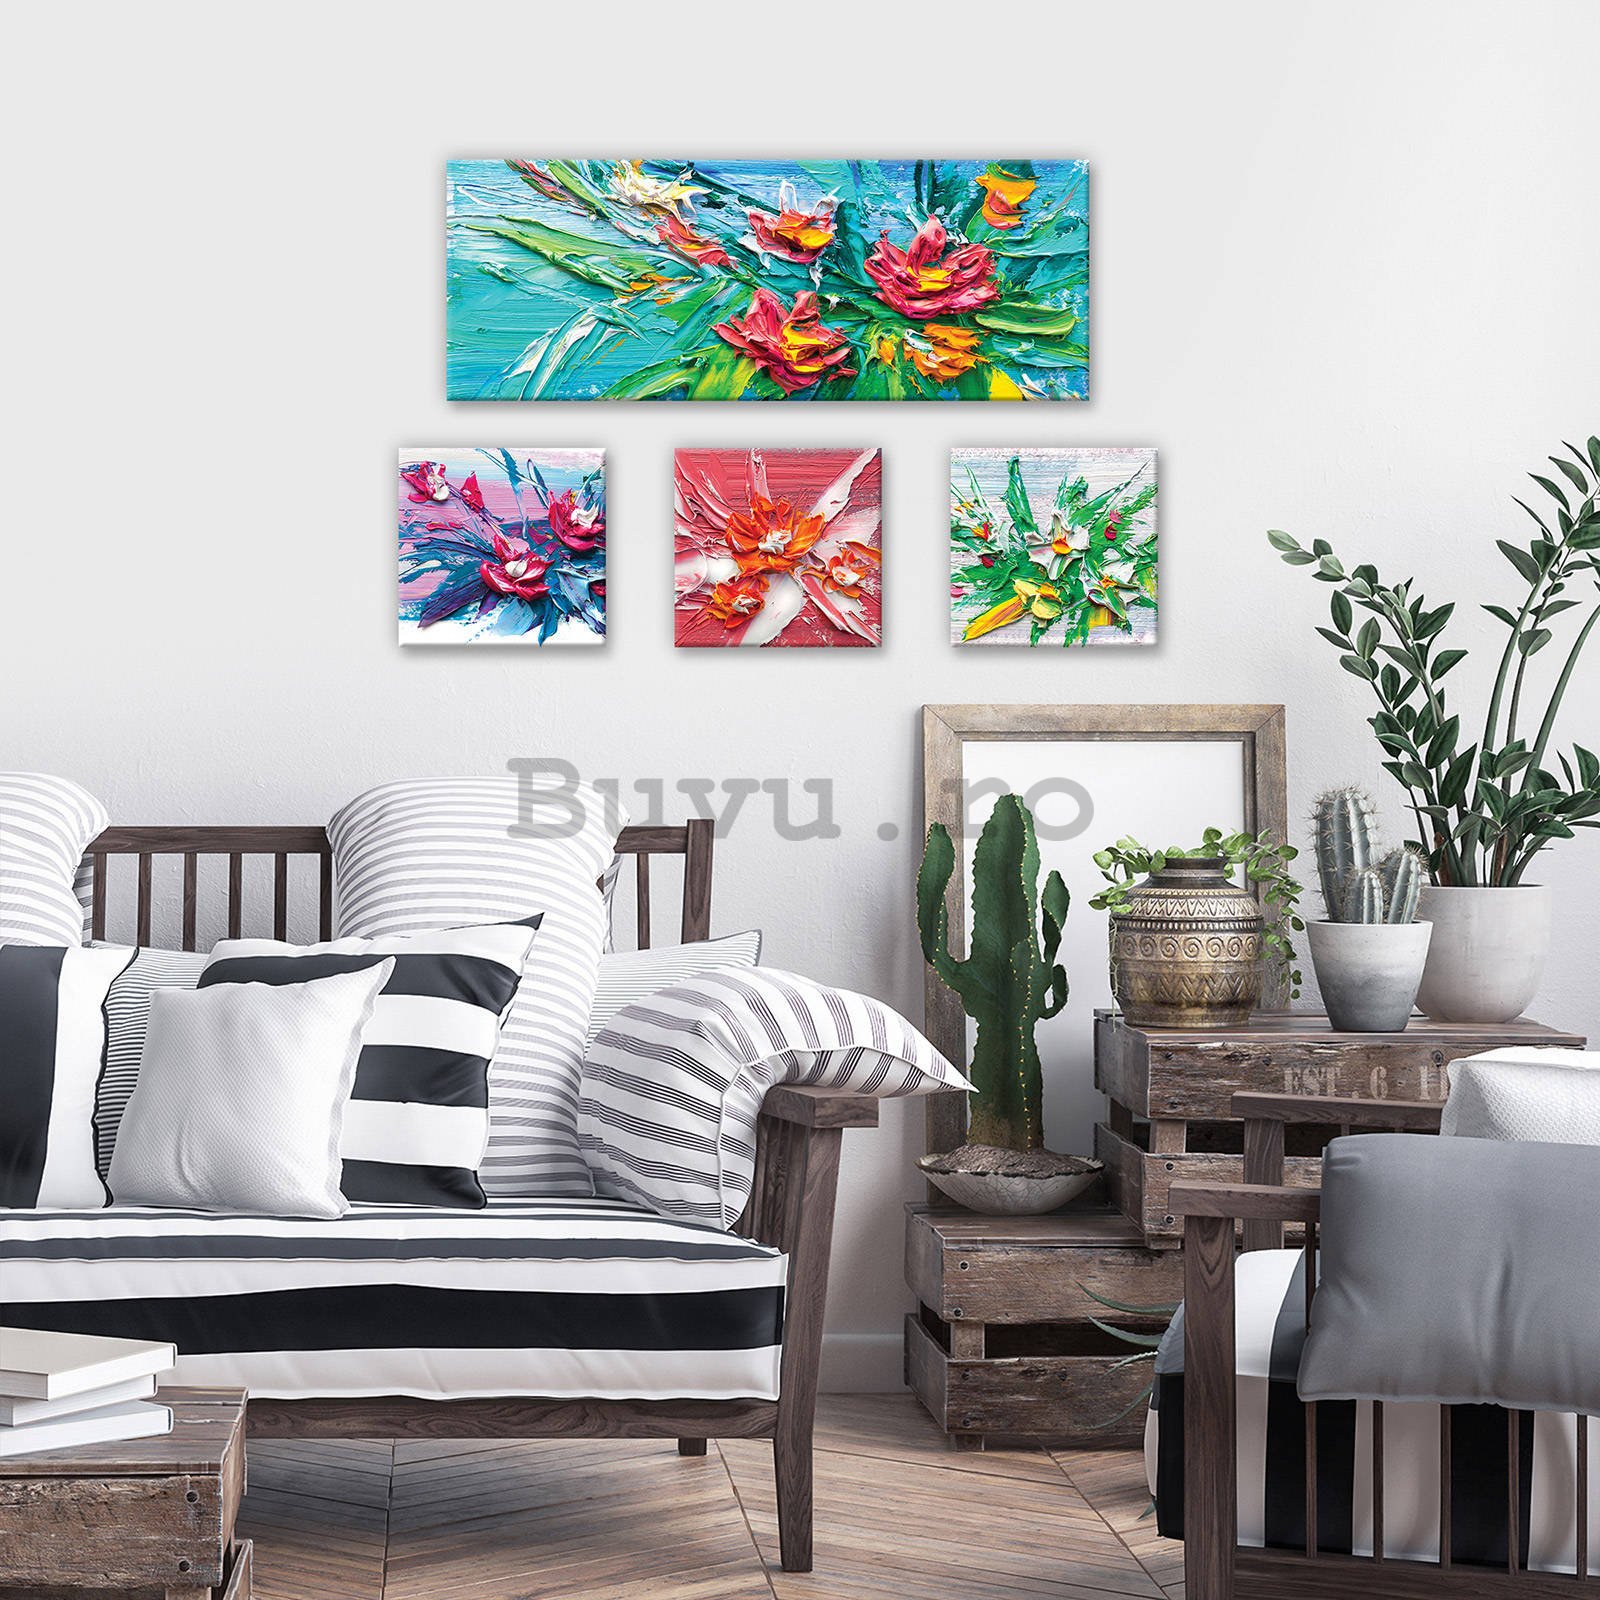 Tablou canvas: Flori pictate - set 1 buc 80x30 cm și 3 buc 25,8x24,8 cm